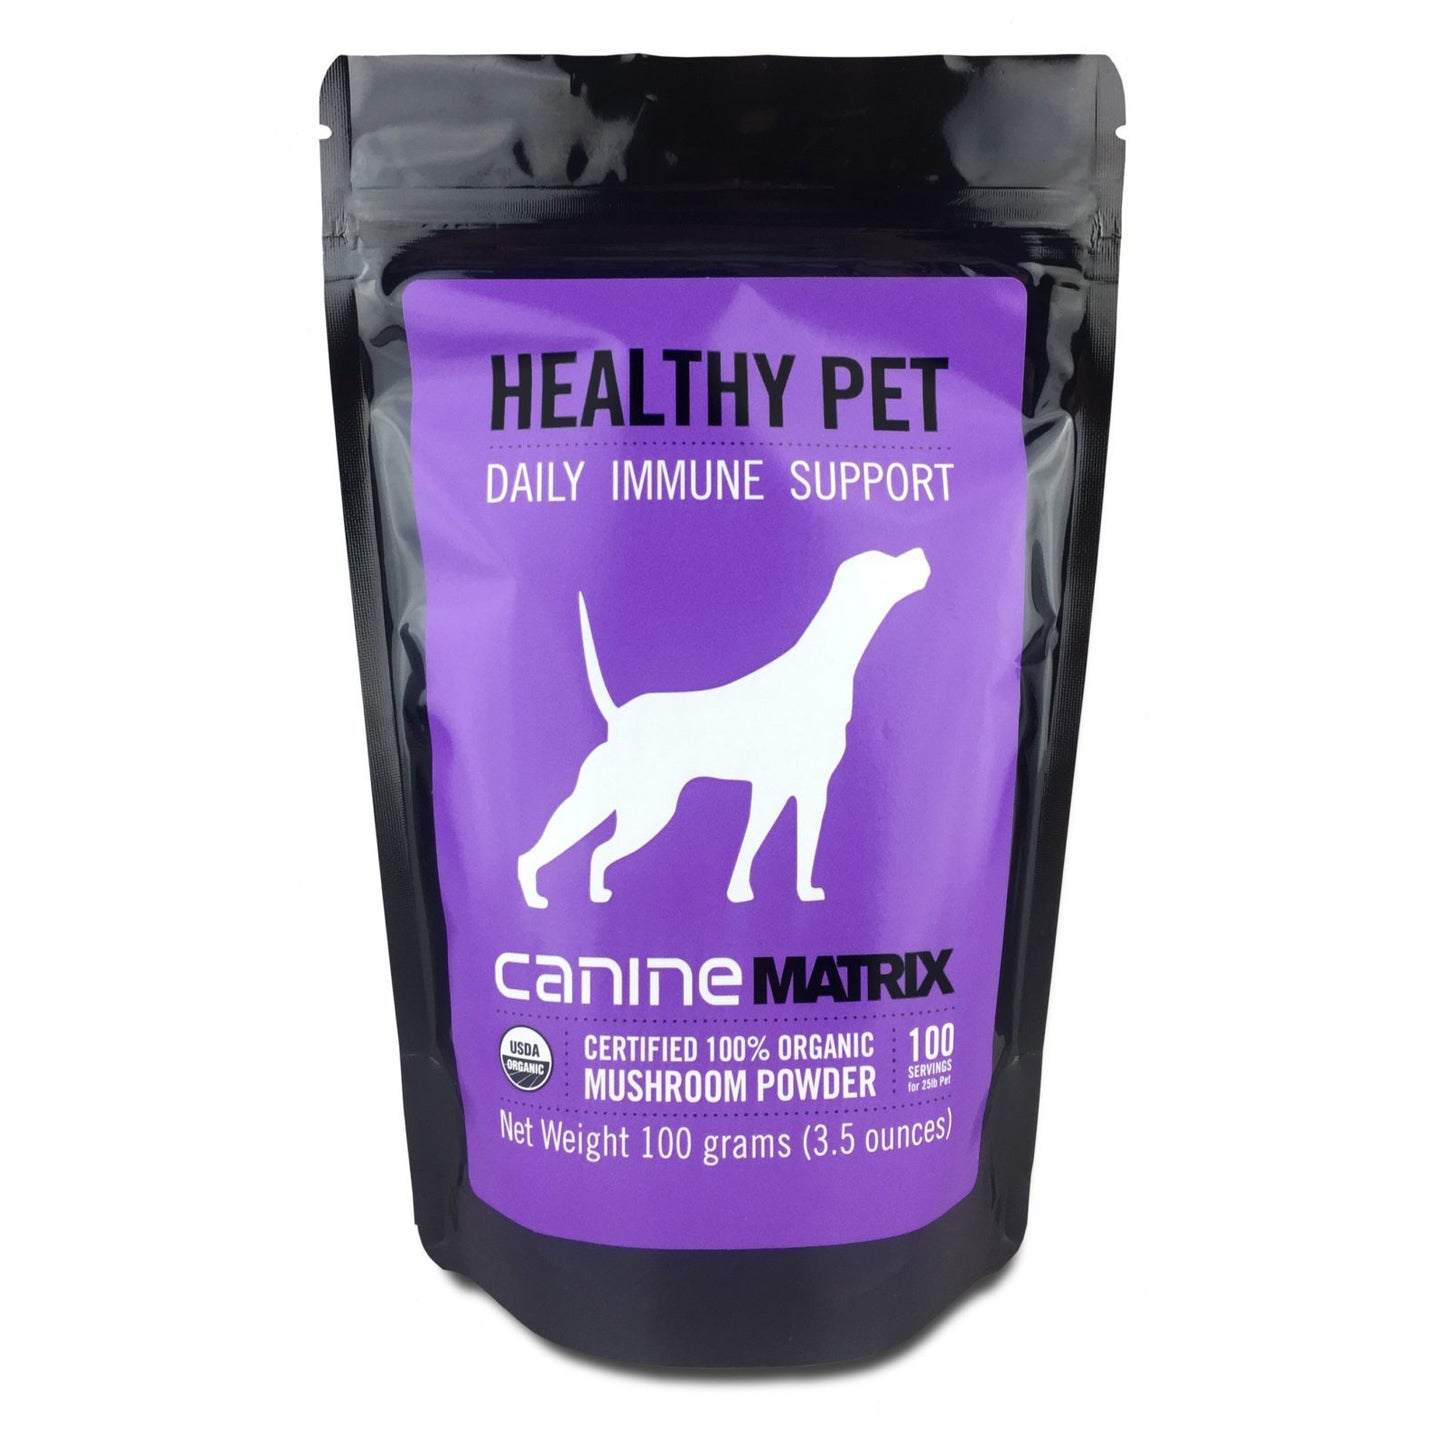 Canine Matrix Healthy Pet Matrix